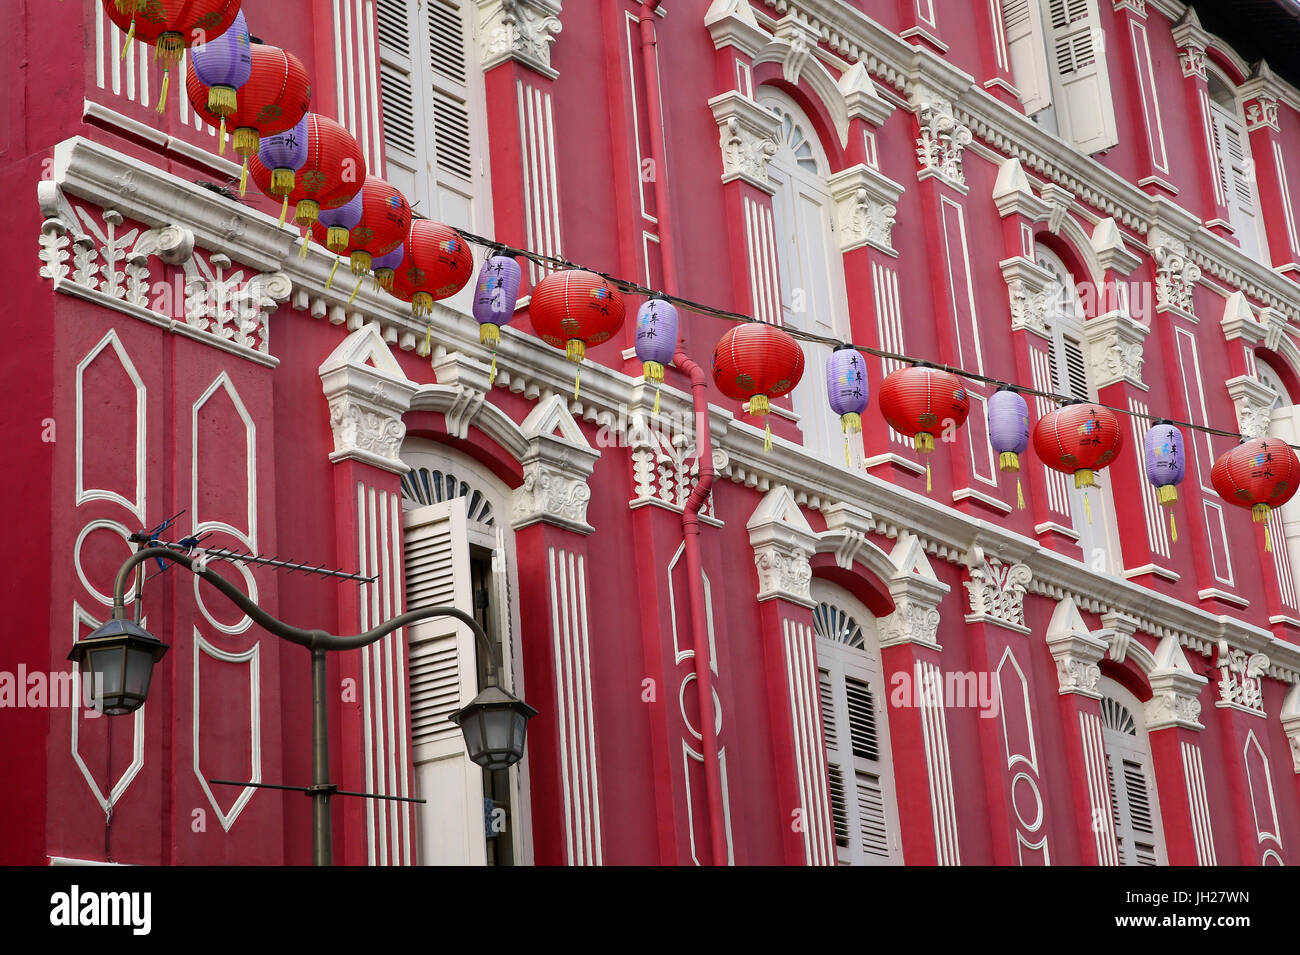 Colorata architettura coloniale. Chinatown. Singapore. Foto Stock